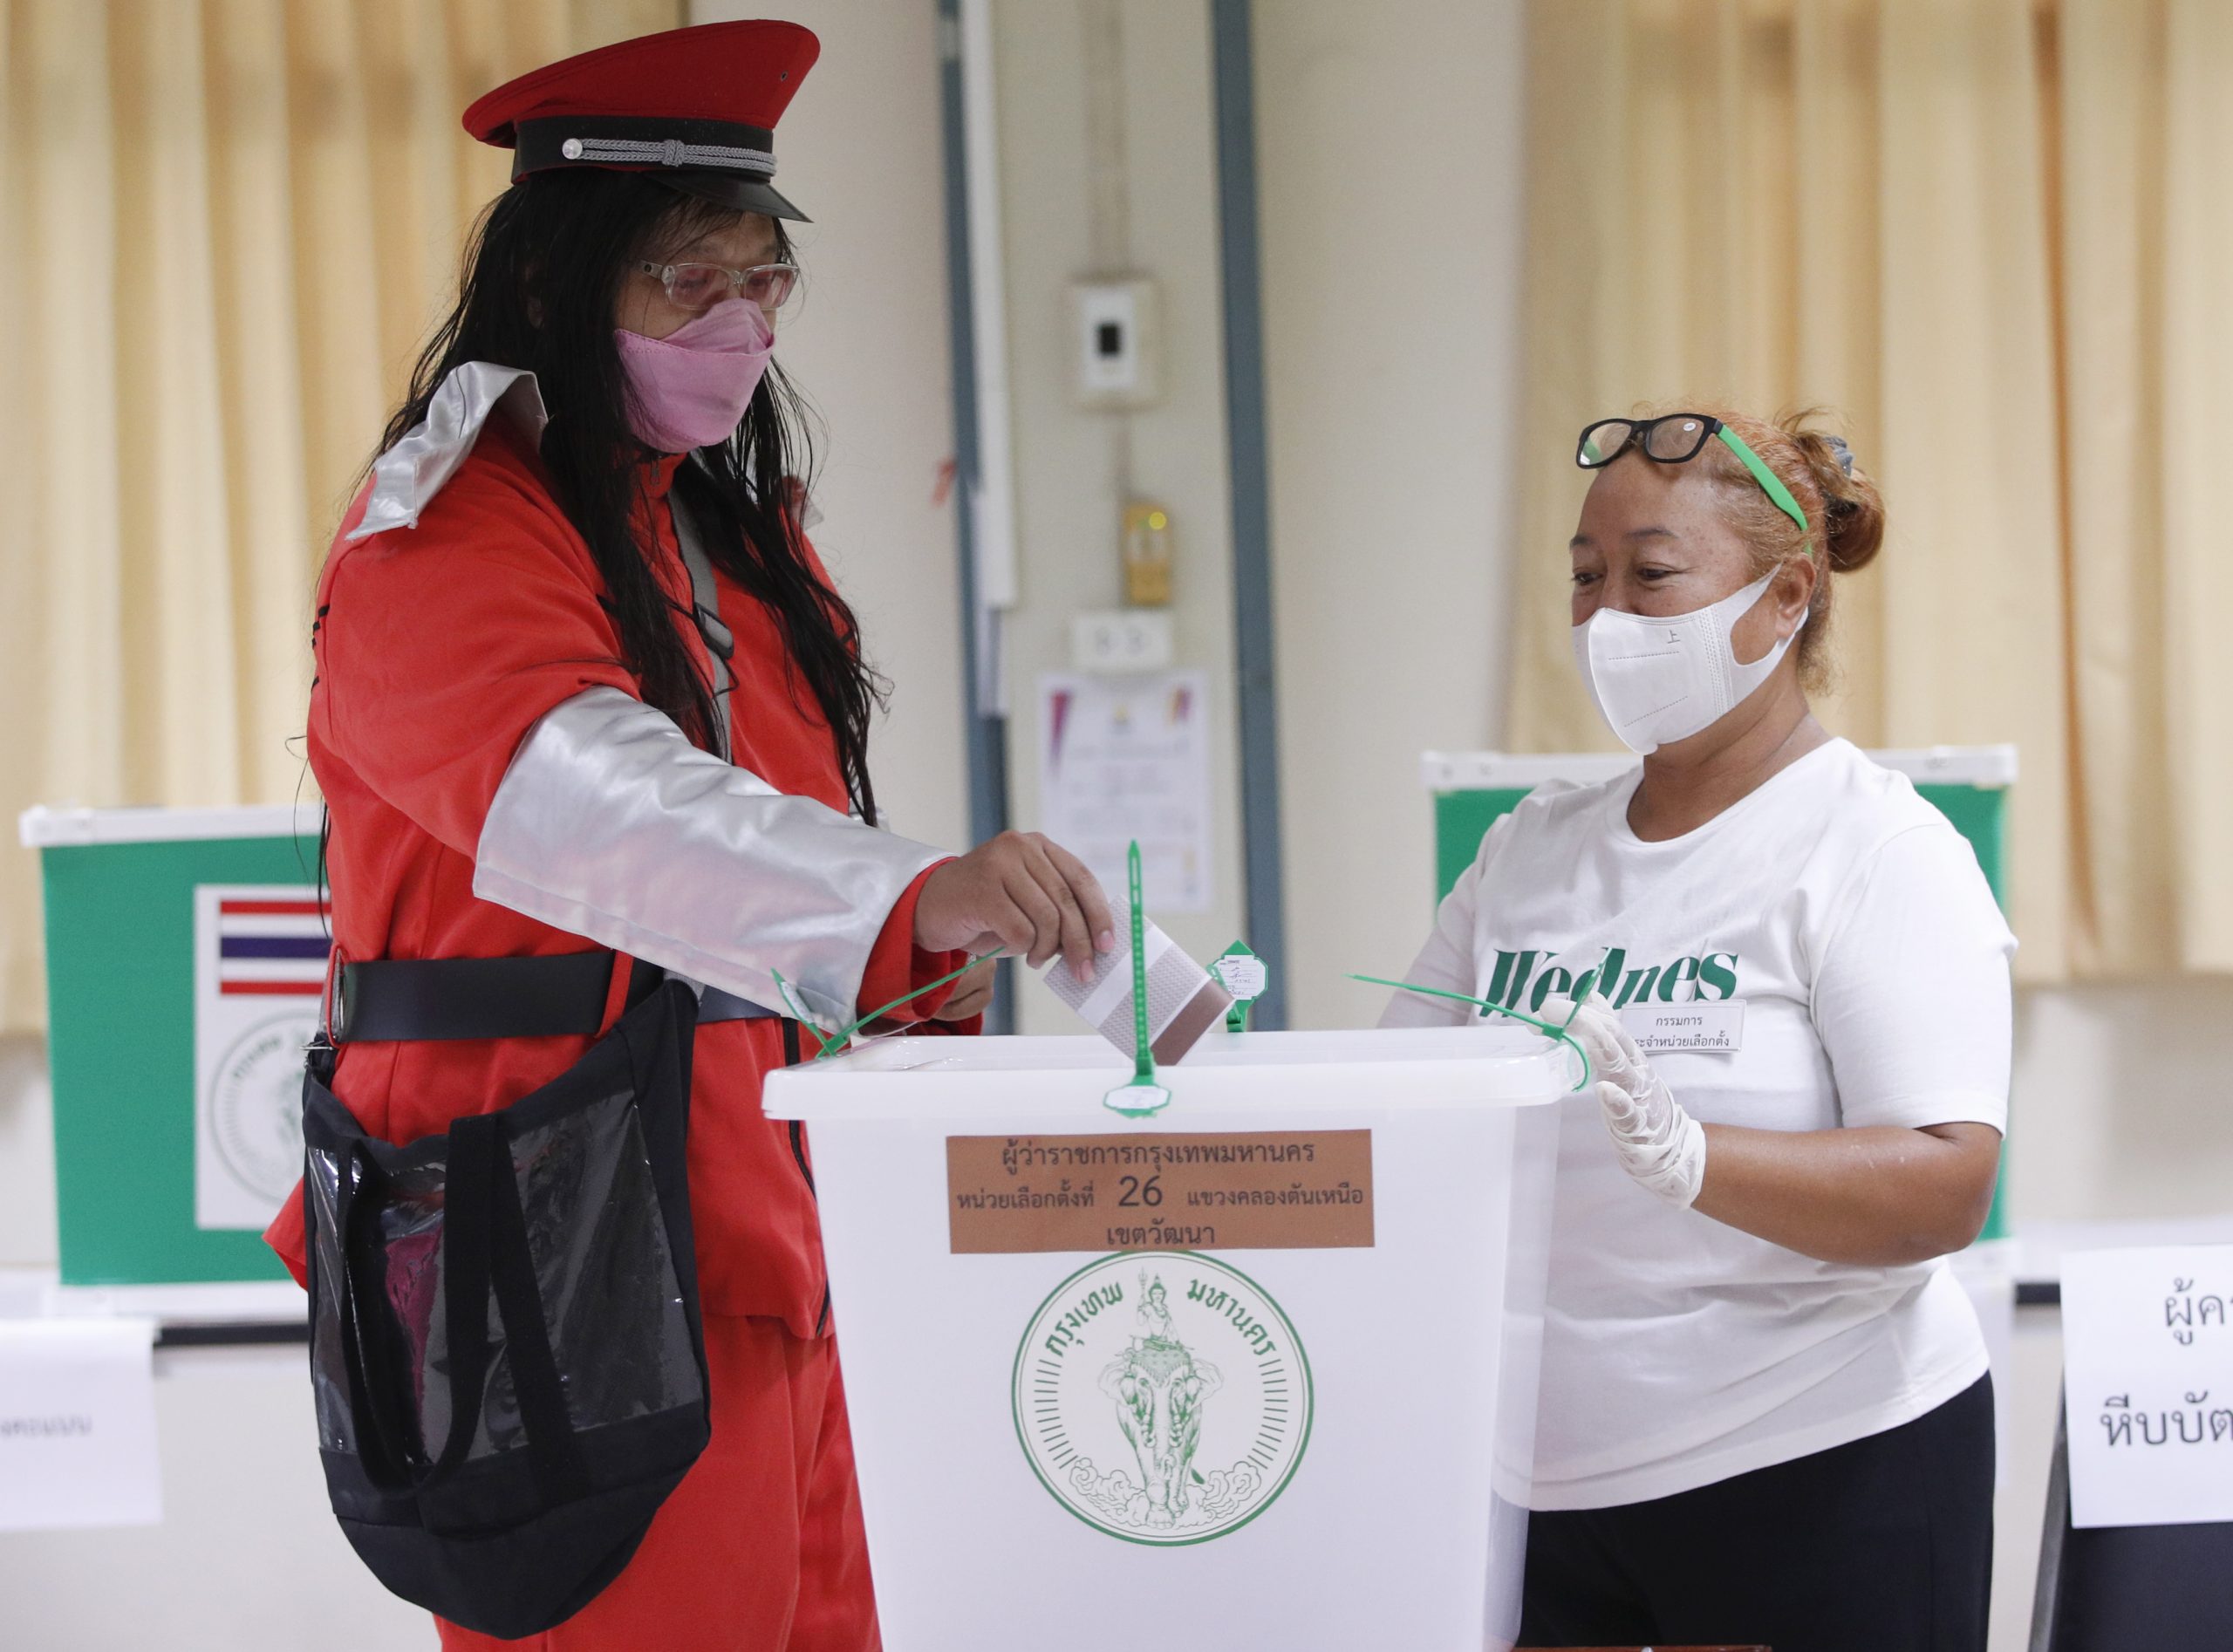 曼谷市长选举登场 料成明年大选风向标